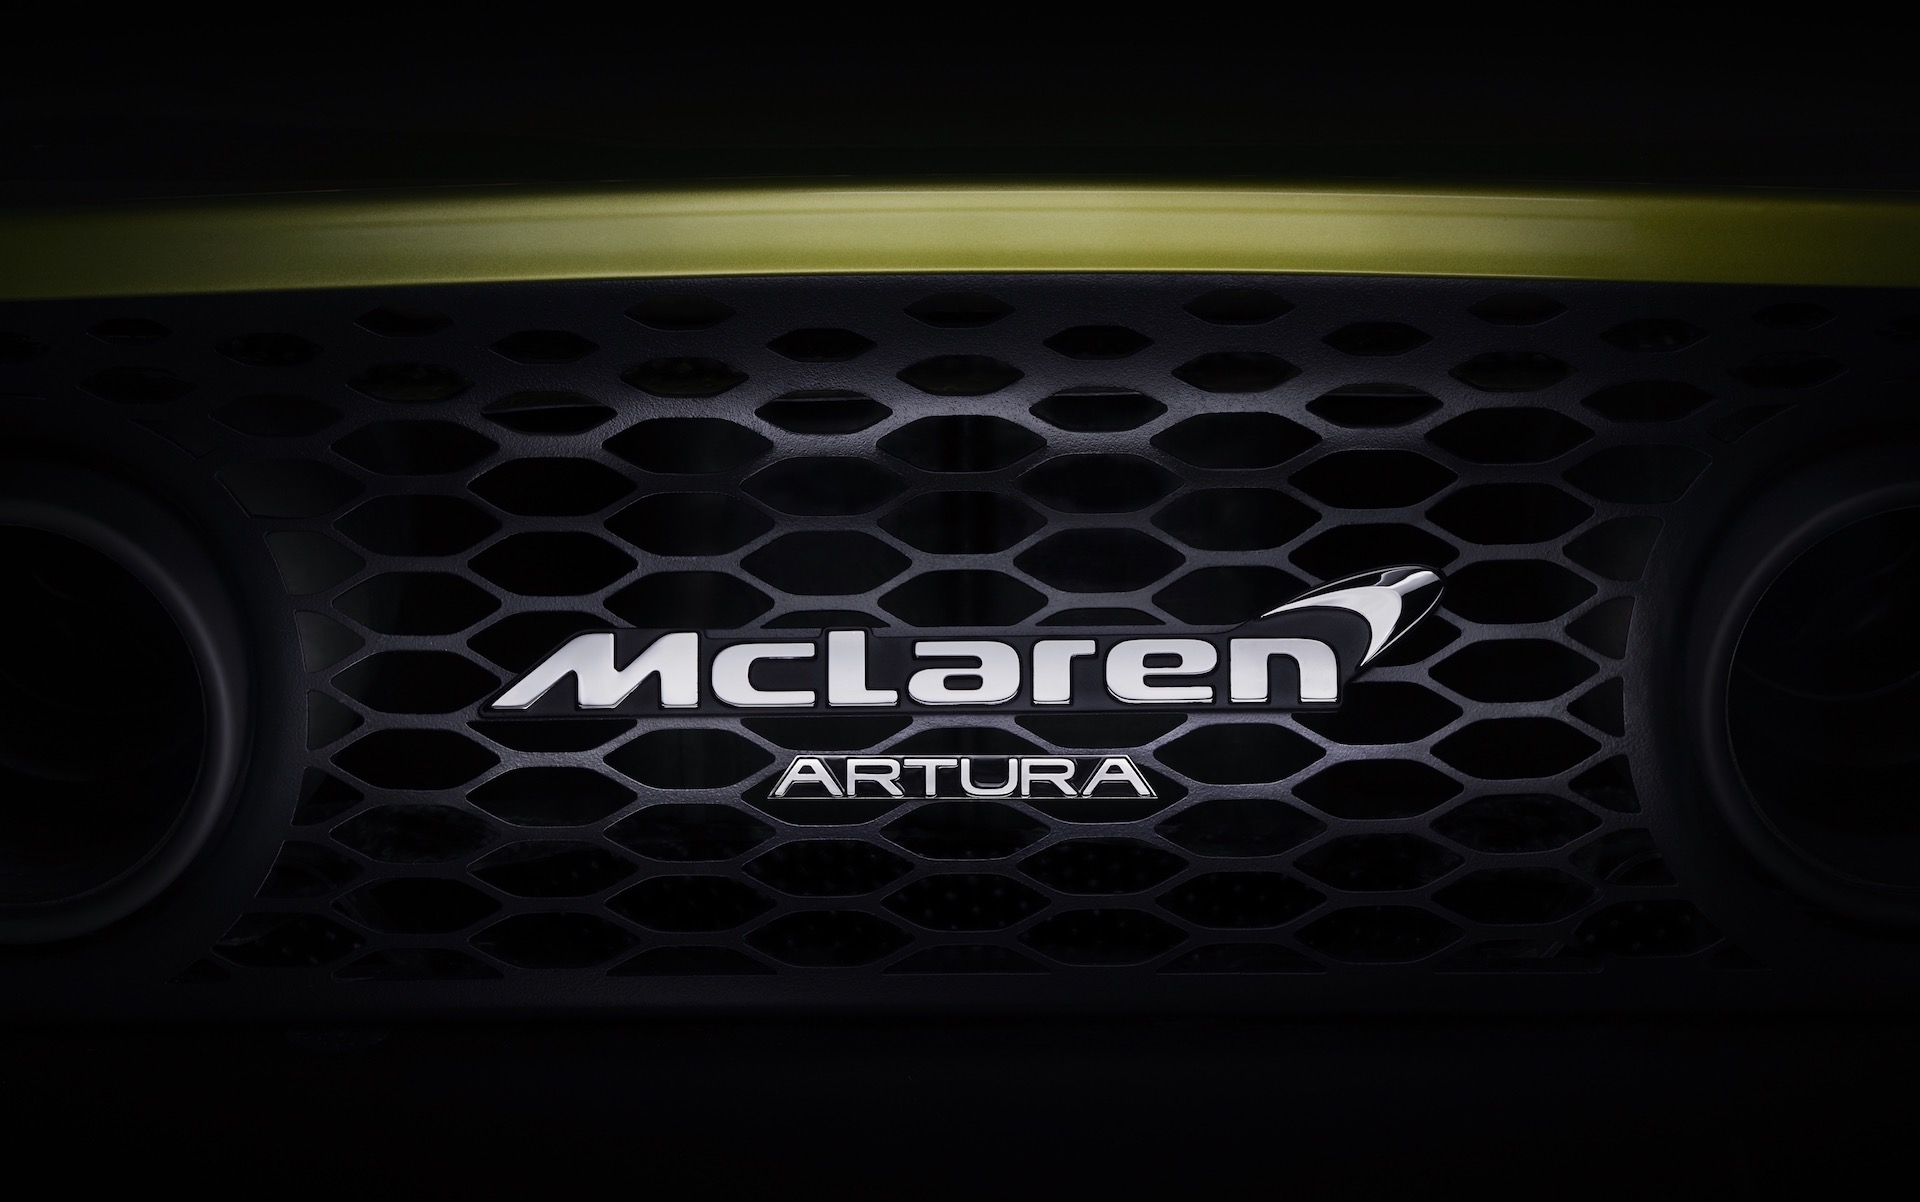 McLaren Artura confirmed as all-new hybrid supercar